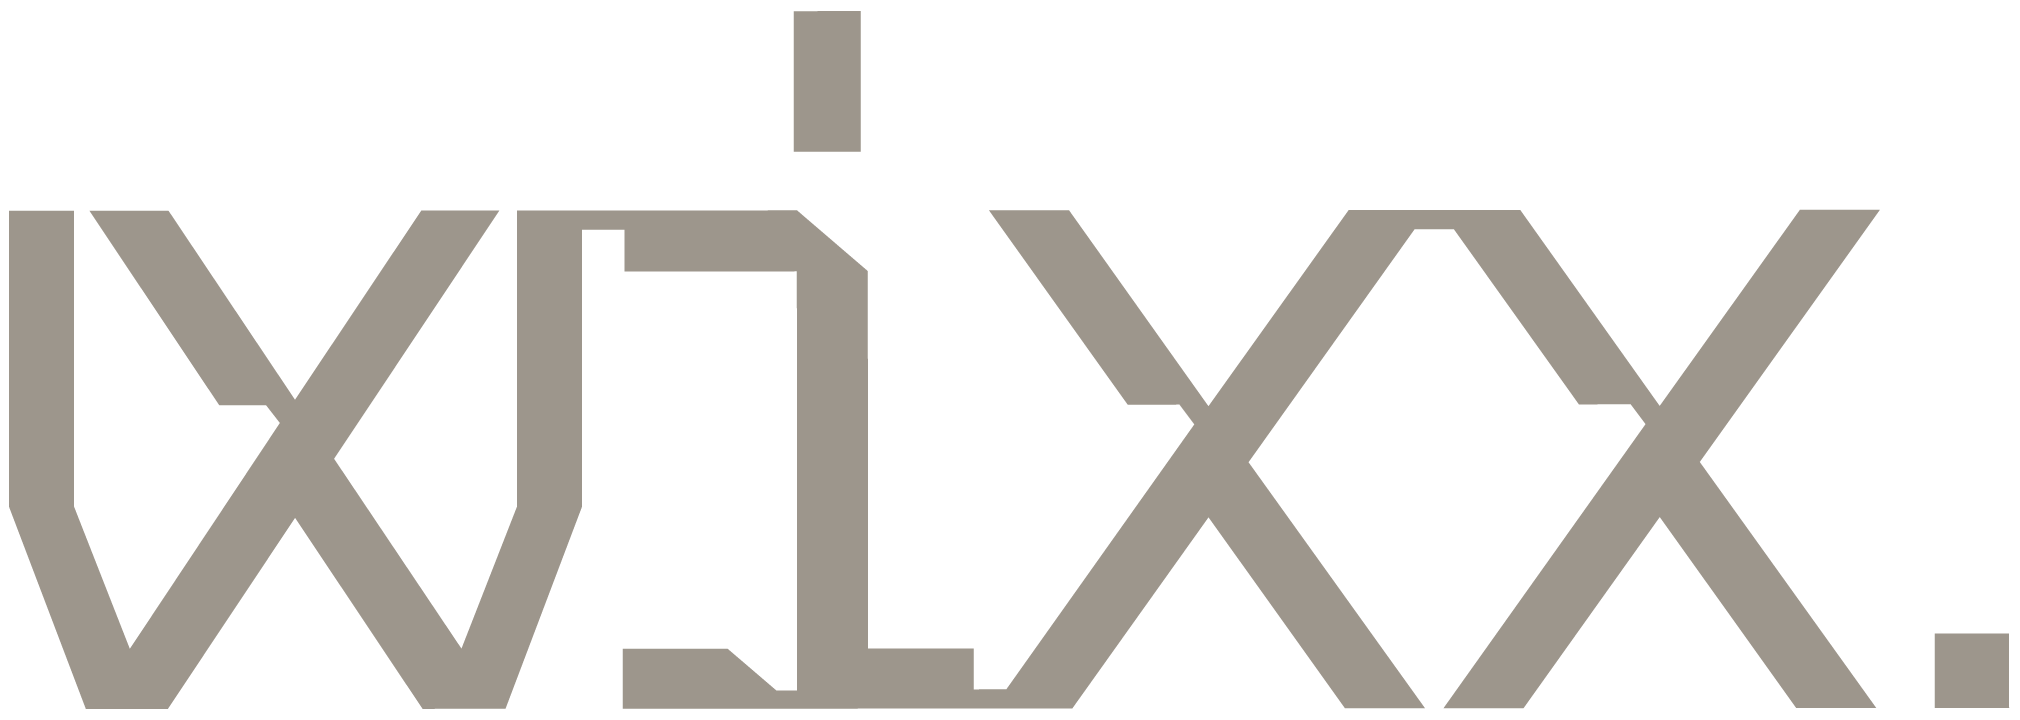 巴西电信公司Wixx的新标志